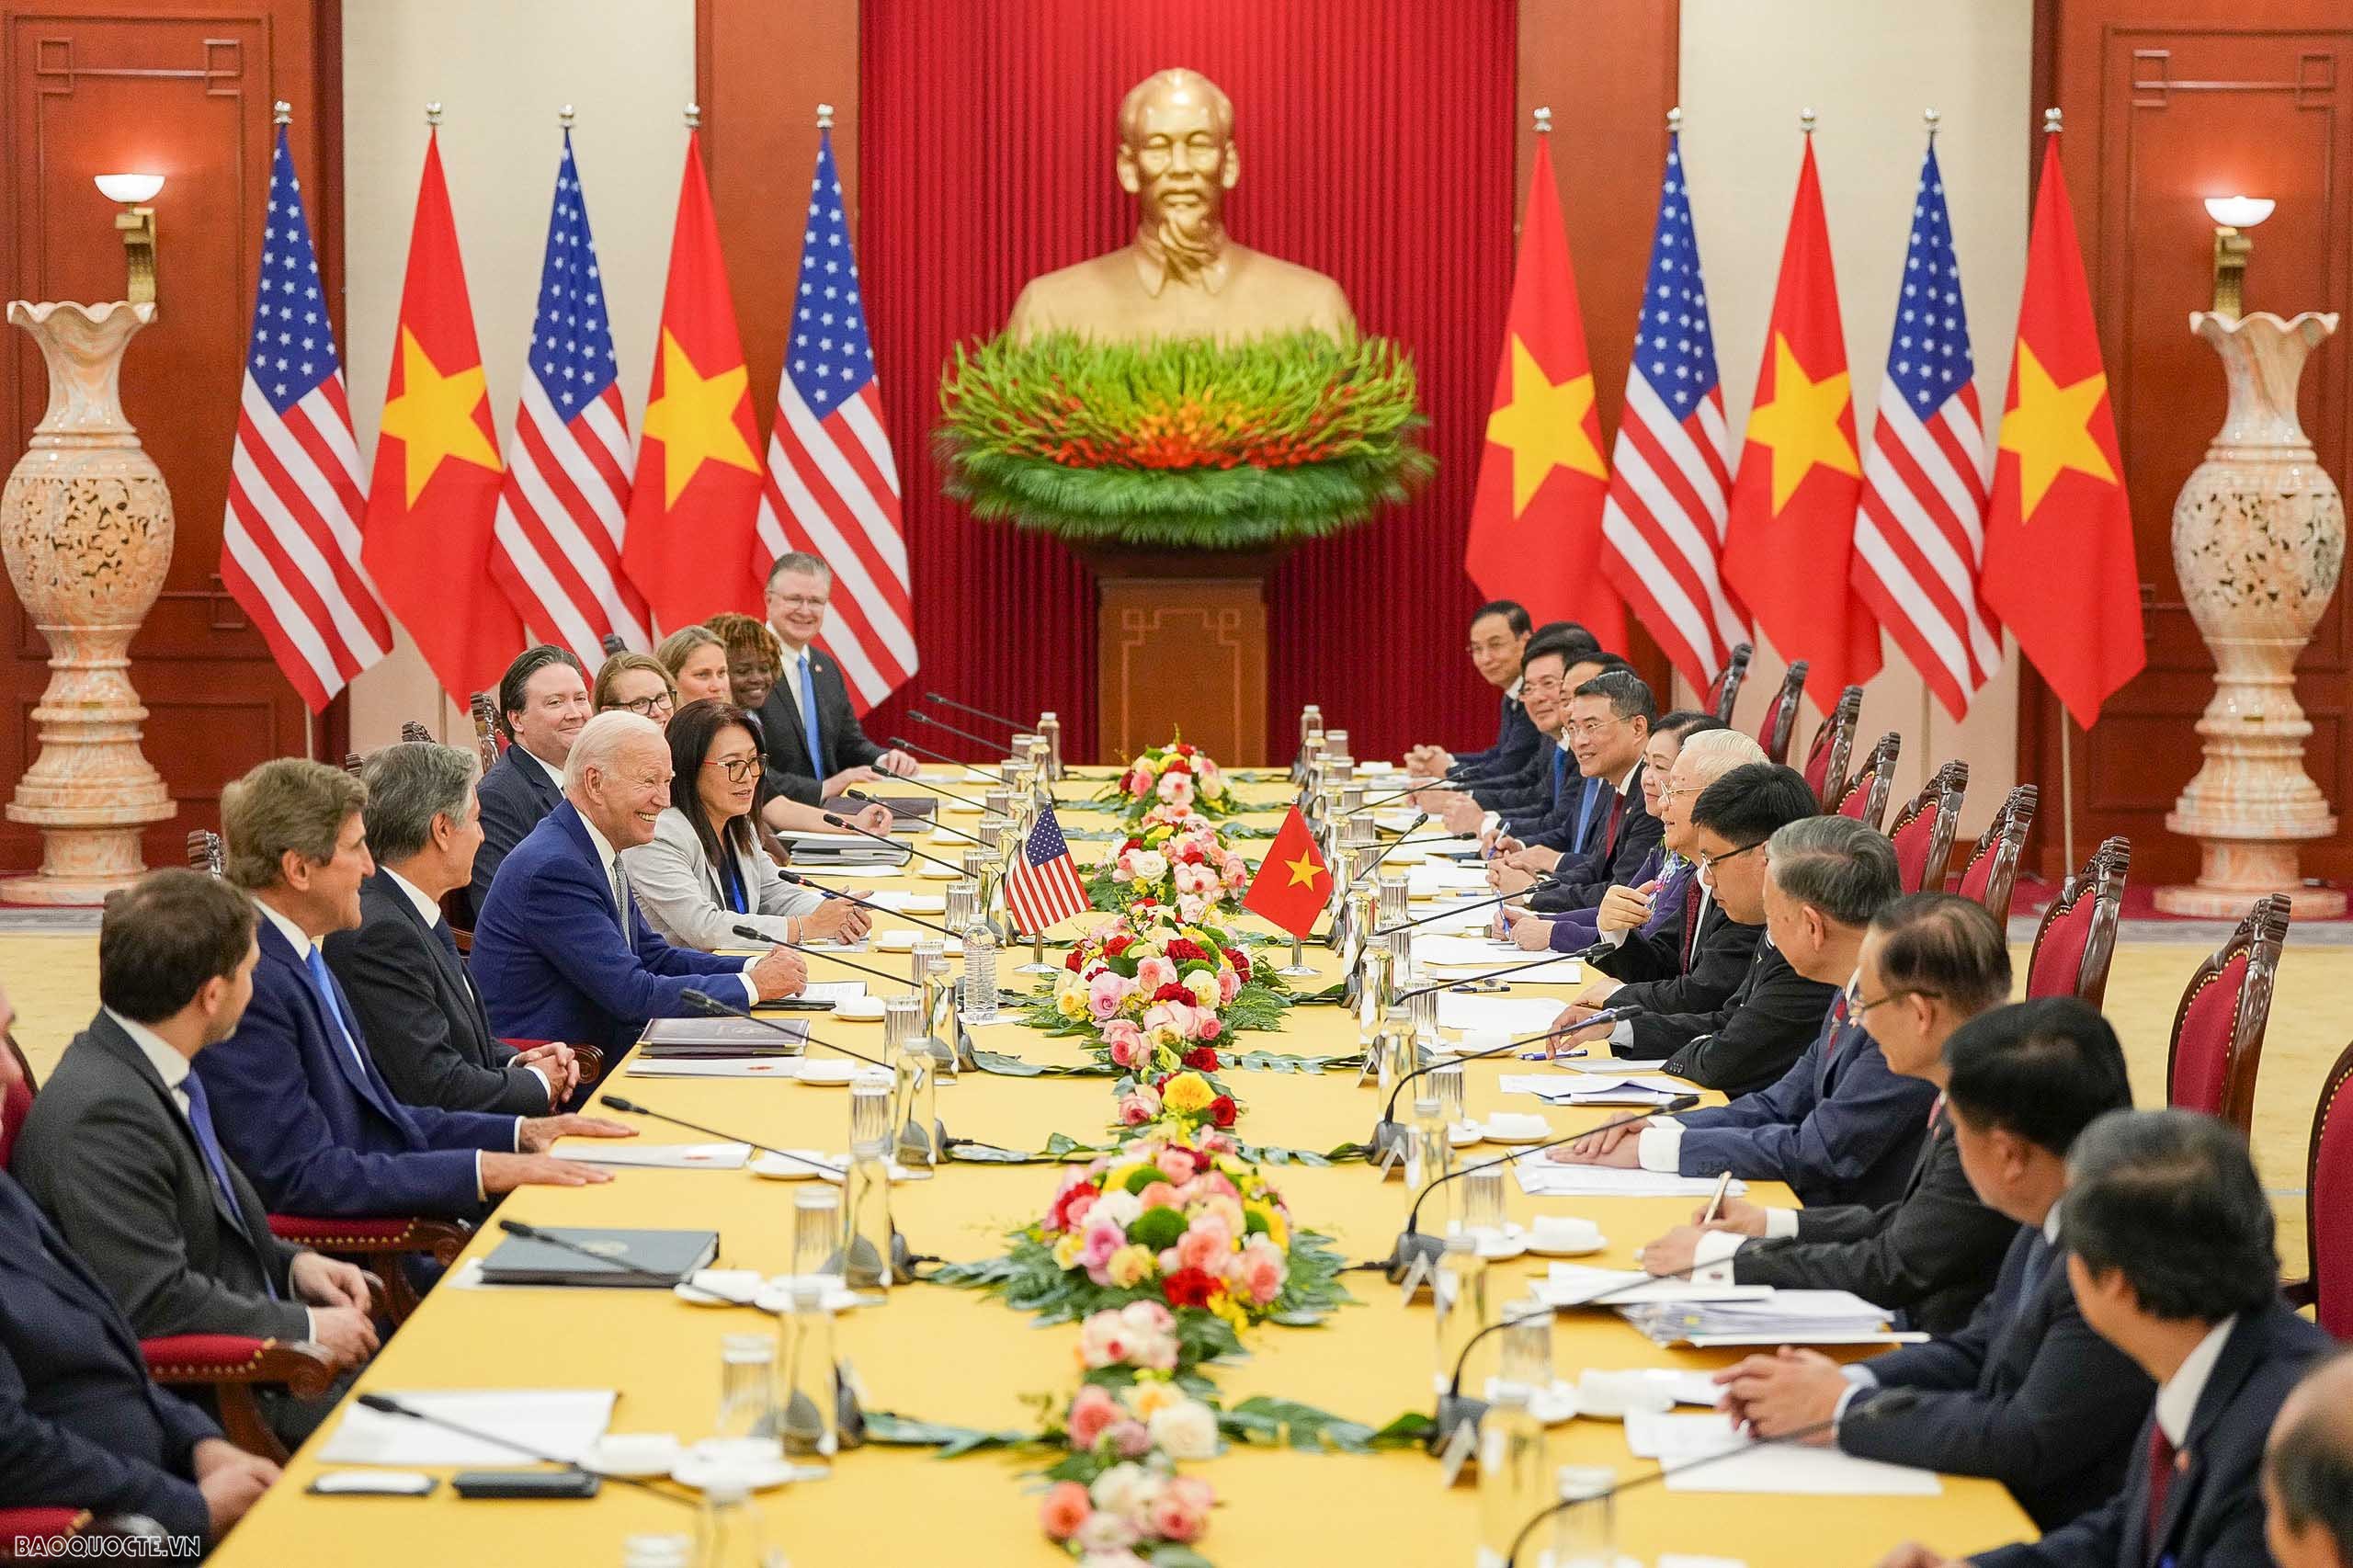 US President Joe Biden’s Vietnam visit spotlighted in media